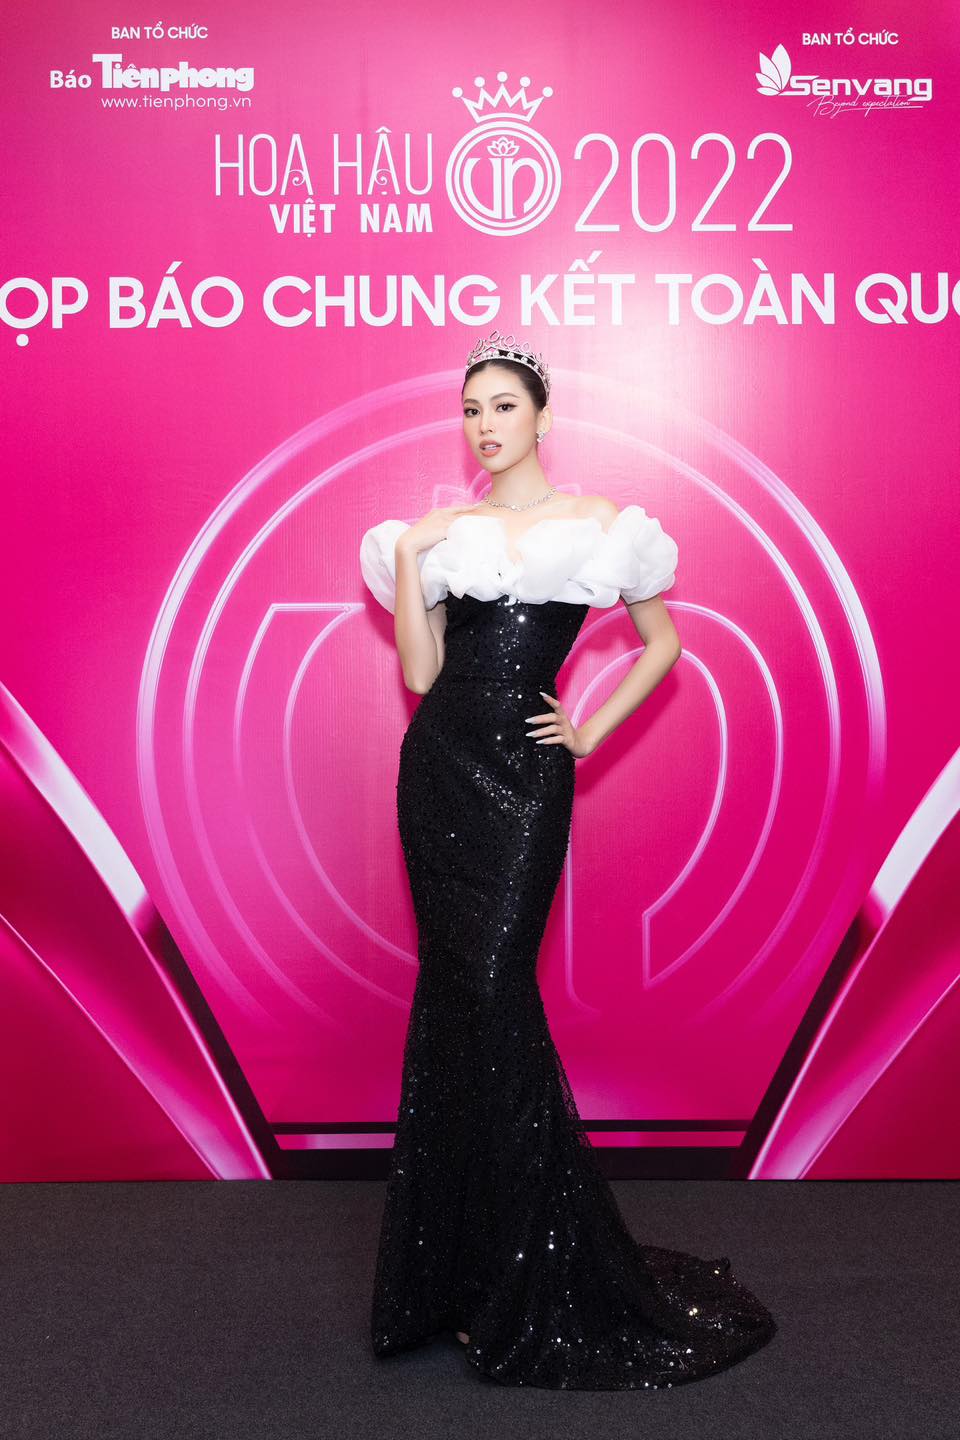 Đọ dáng cùng dàn người đẹp, đương kim Hoa hậu Việt Nam Đỗ Thị Hà vẫn bị Tiểu Vy chiếm spotlight? - Ảnh 8